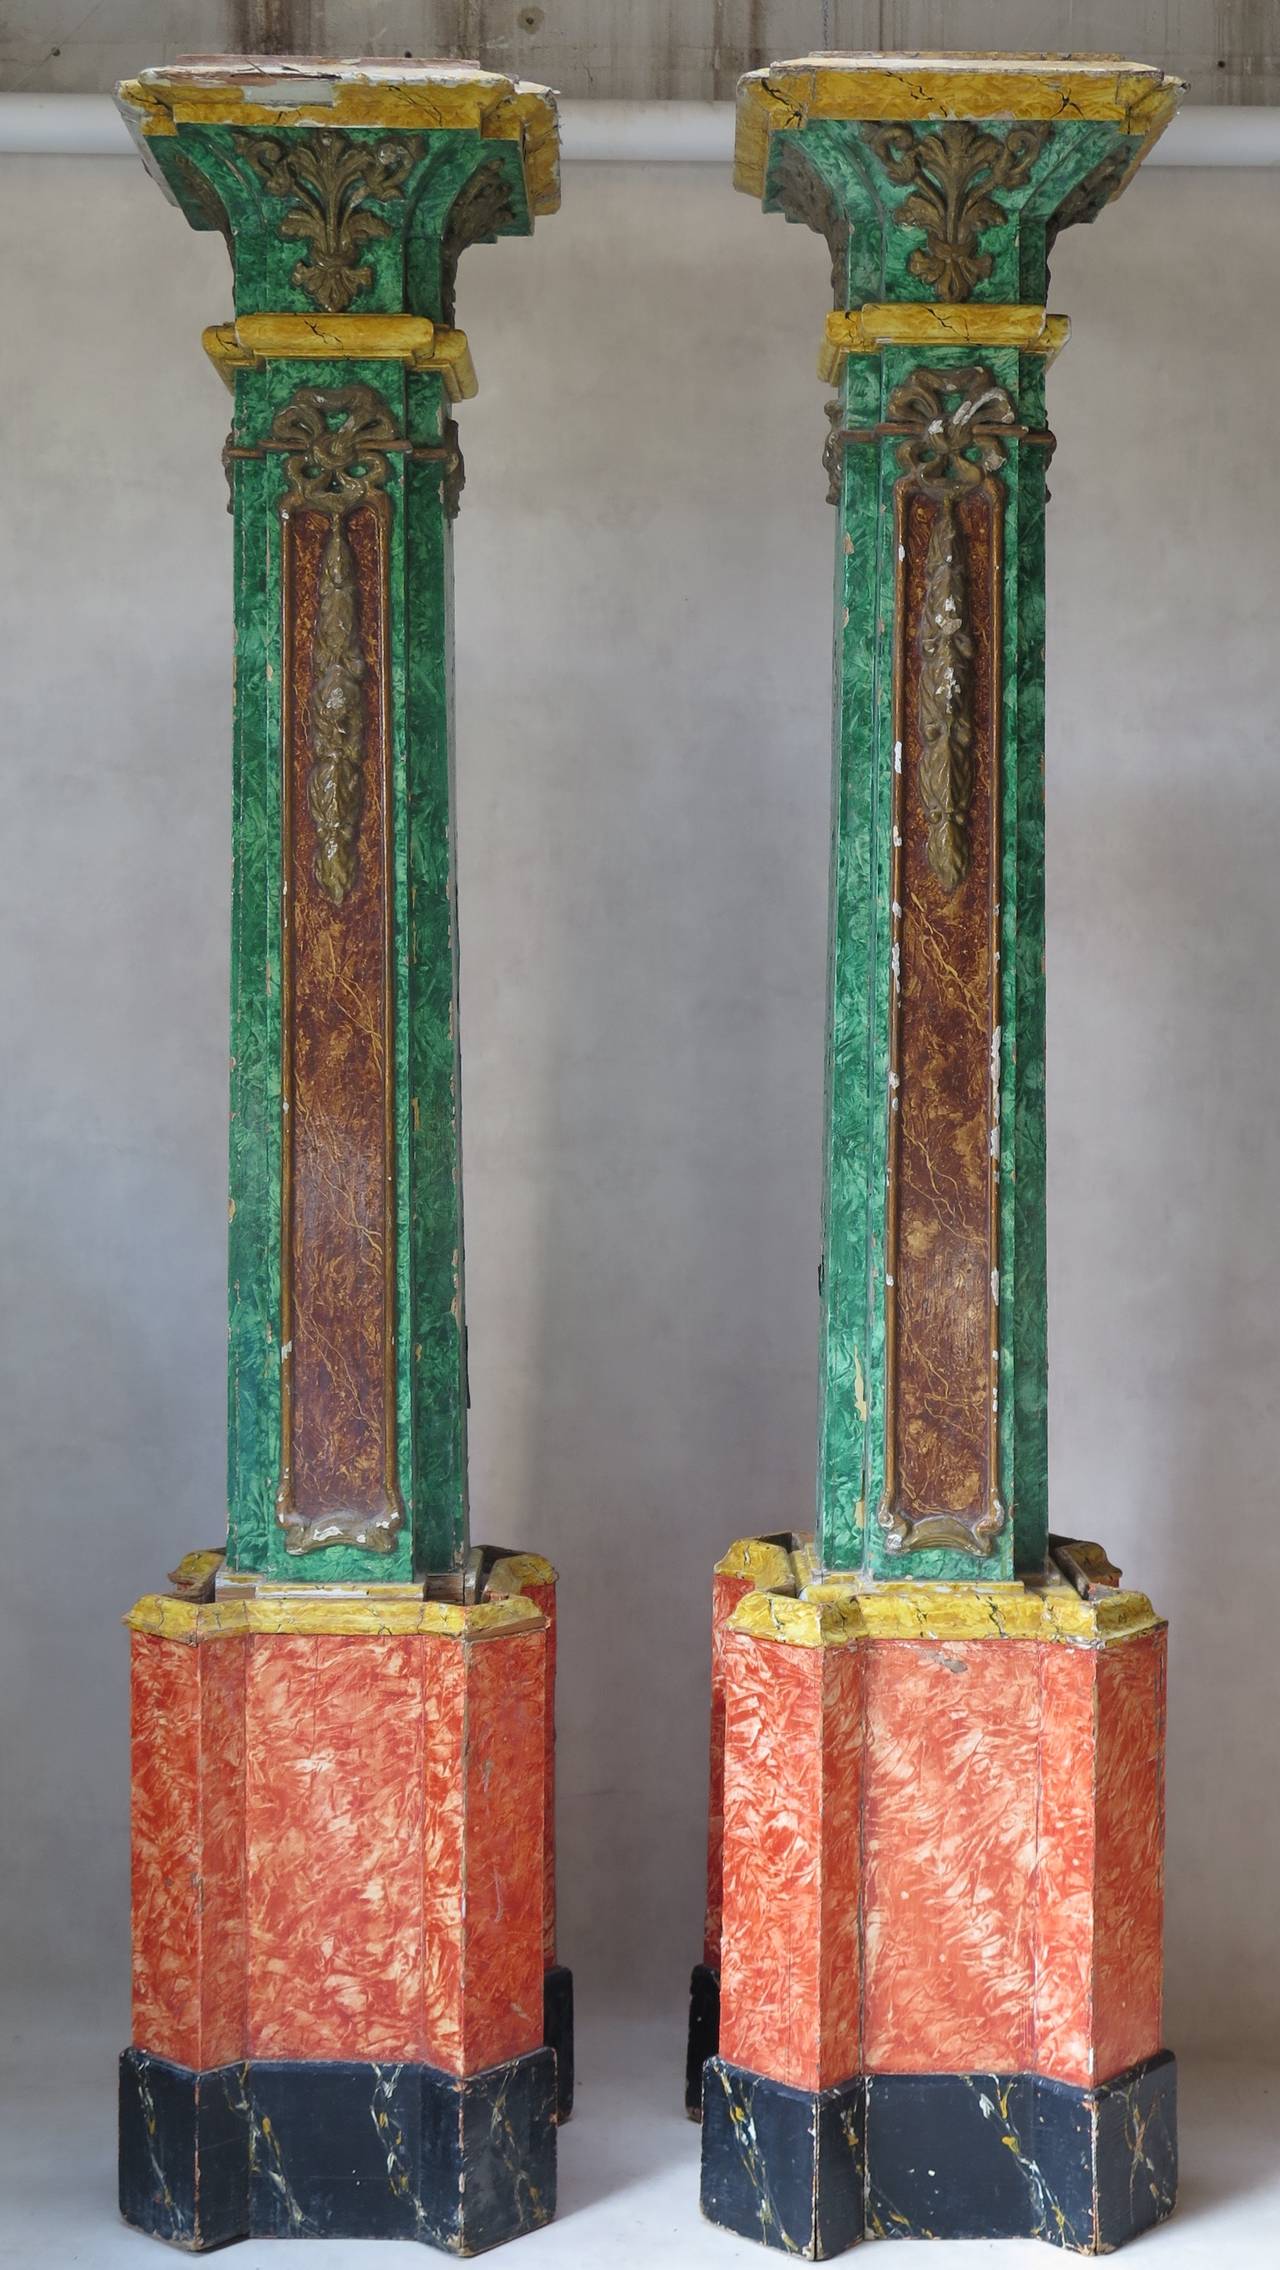 Une très haute paire de colonnes décoratives en bois en deux parties (bases et sommets), peintes en marbre polychrome en trompe l'œil. Les moulures des parties supérieures (peintes en or antique) sont en papier mâché.